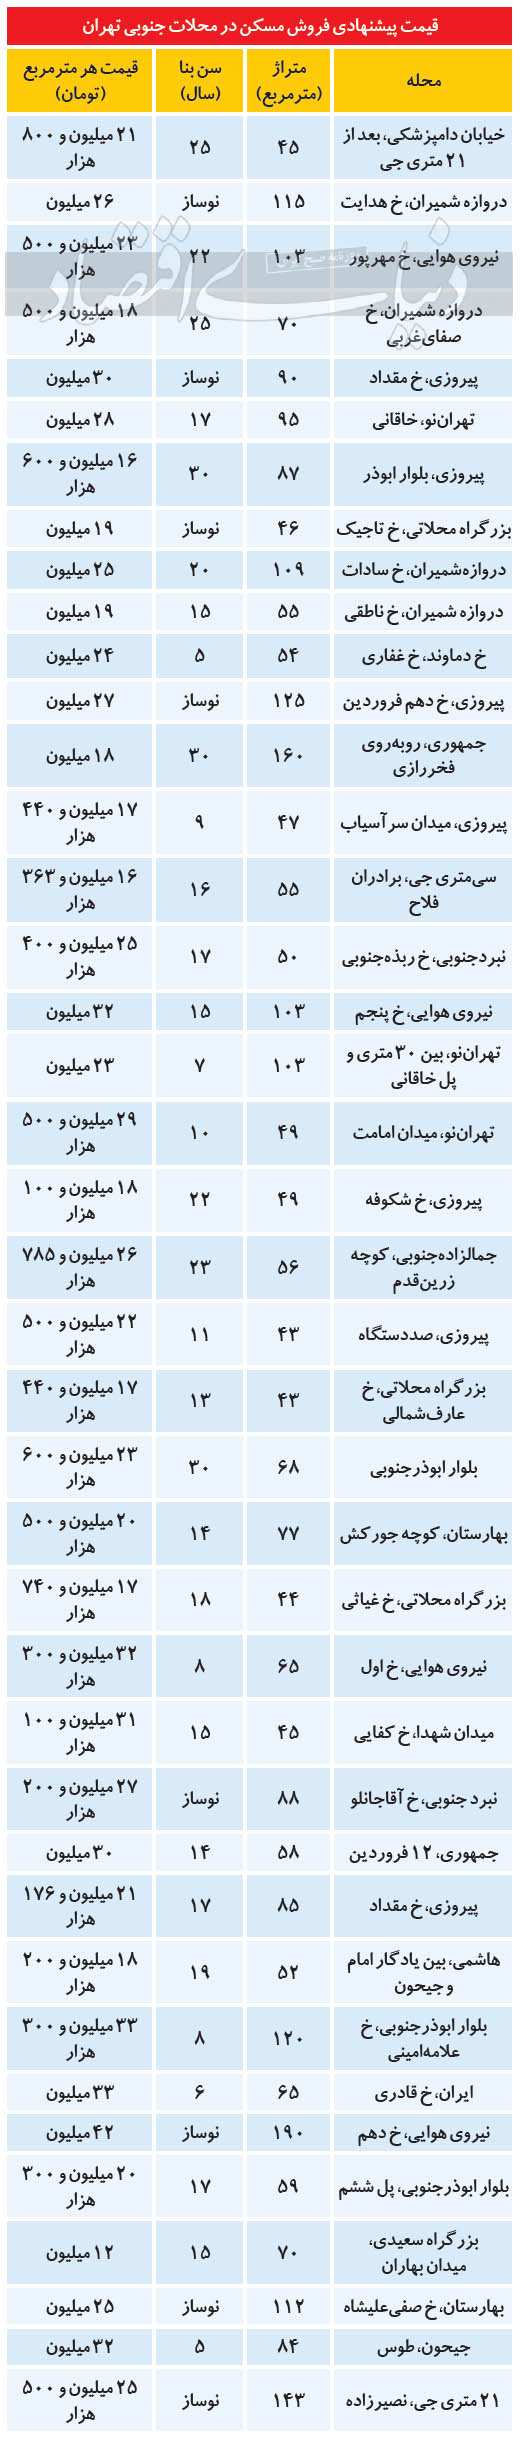 مسکن در جنوب تهران چند؟/ جدول قیمت